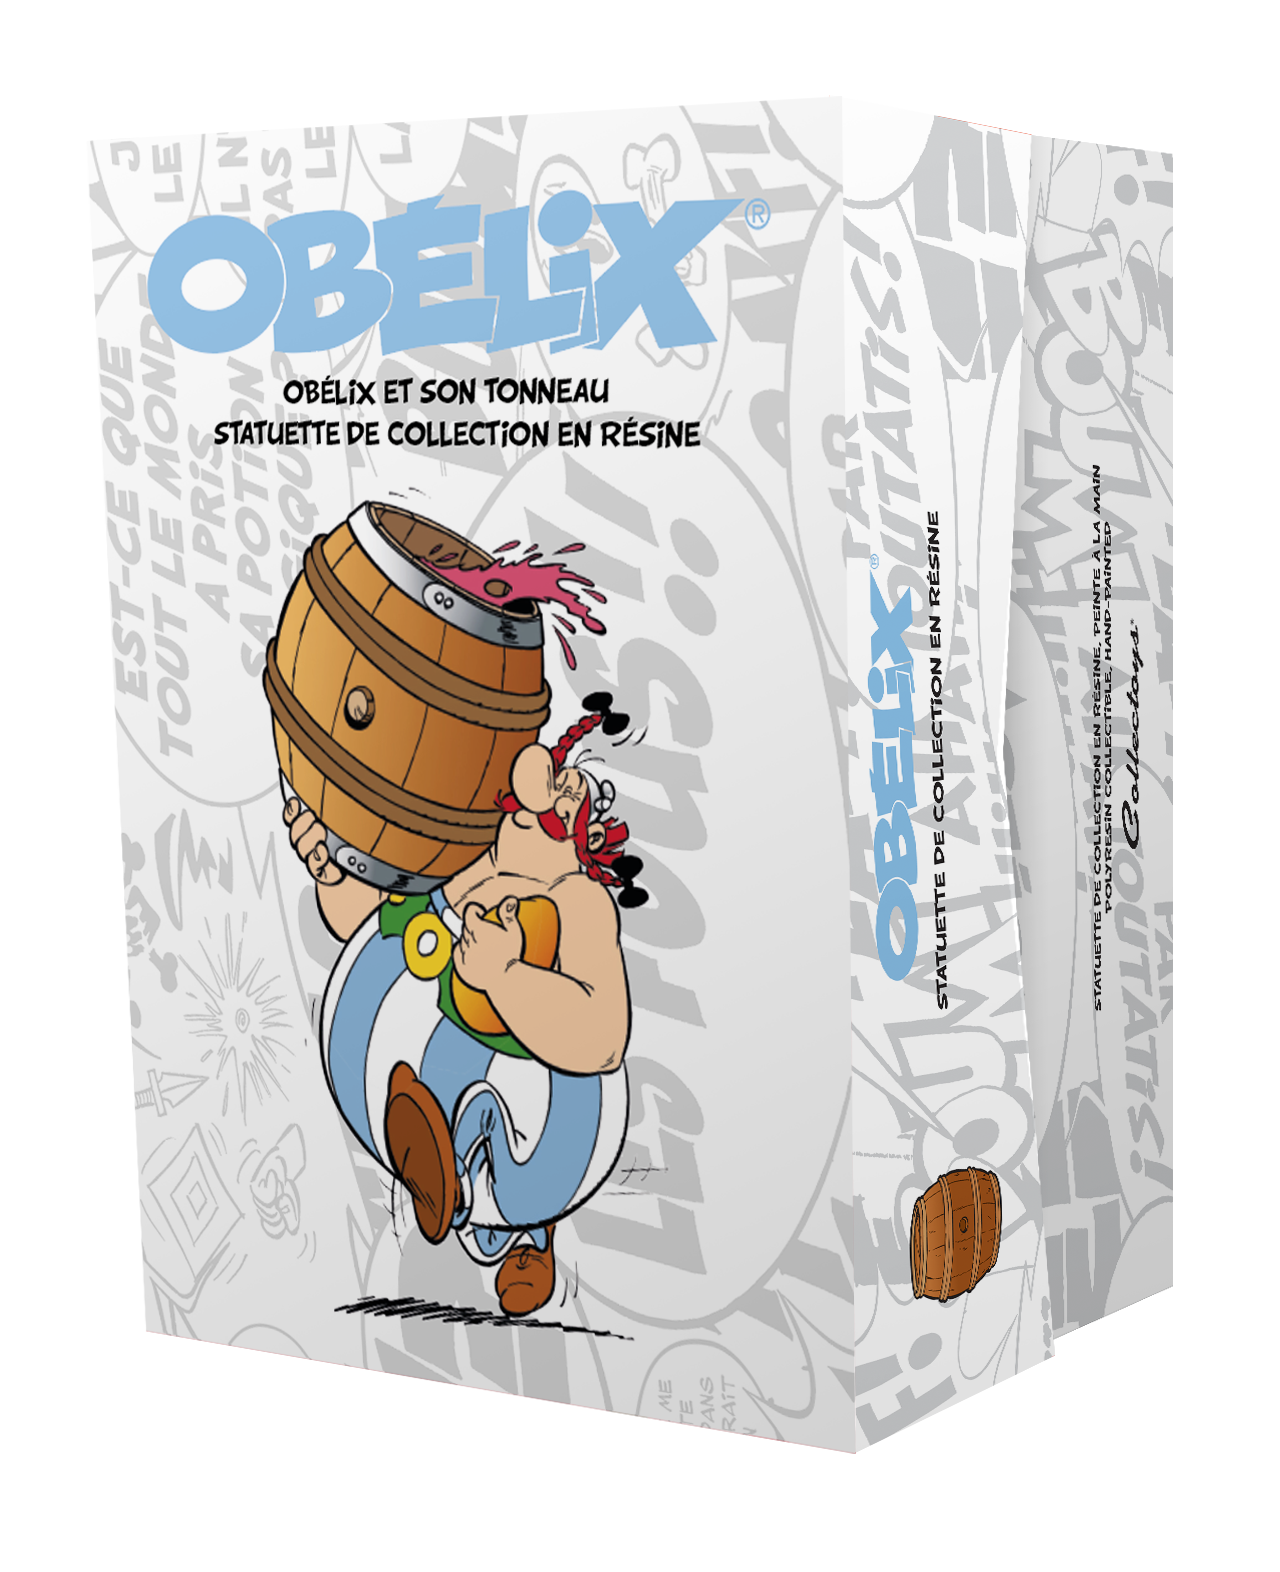 Obelix met ton